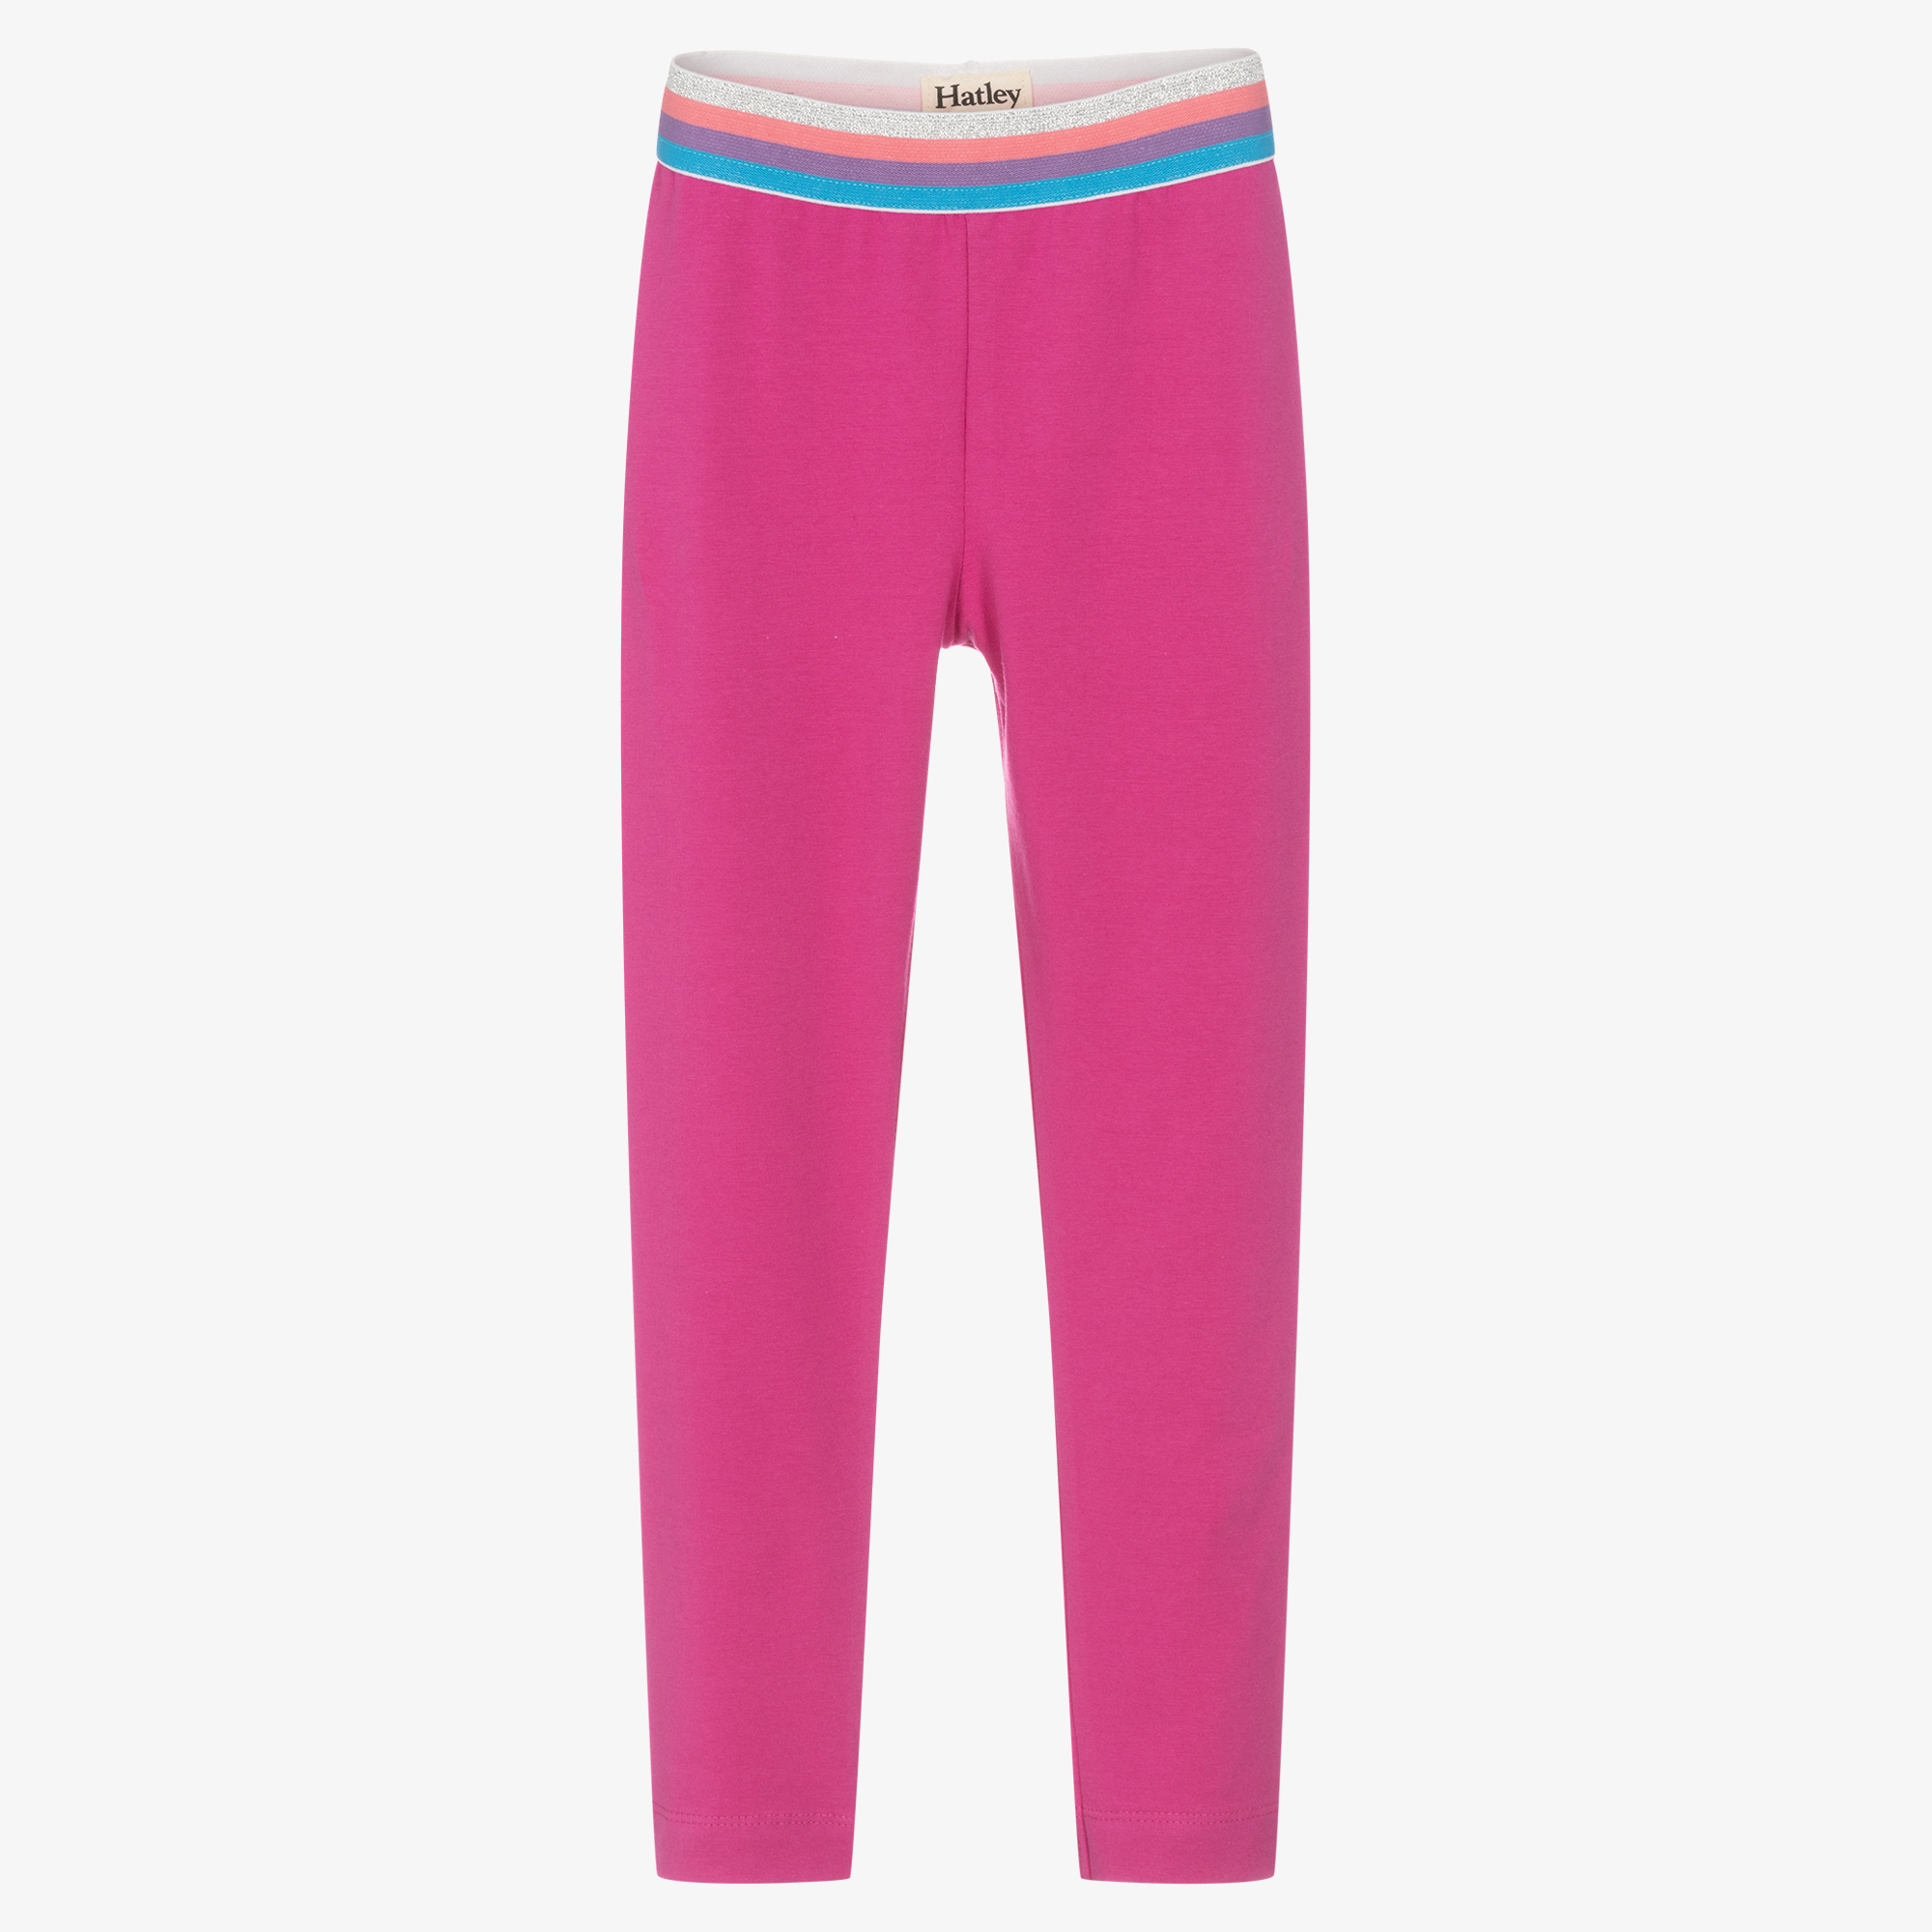 Buy The Children's Place Girls Girls Pink Leggings - Full Length - NNNOW.com